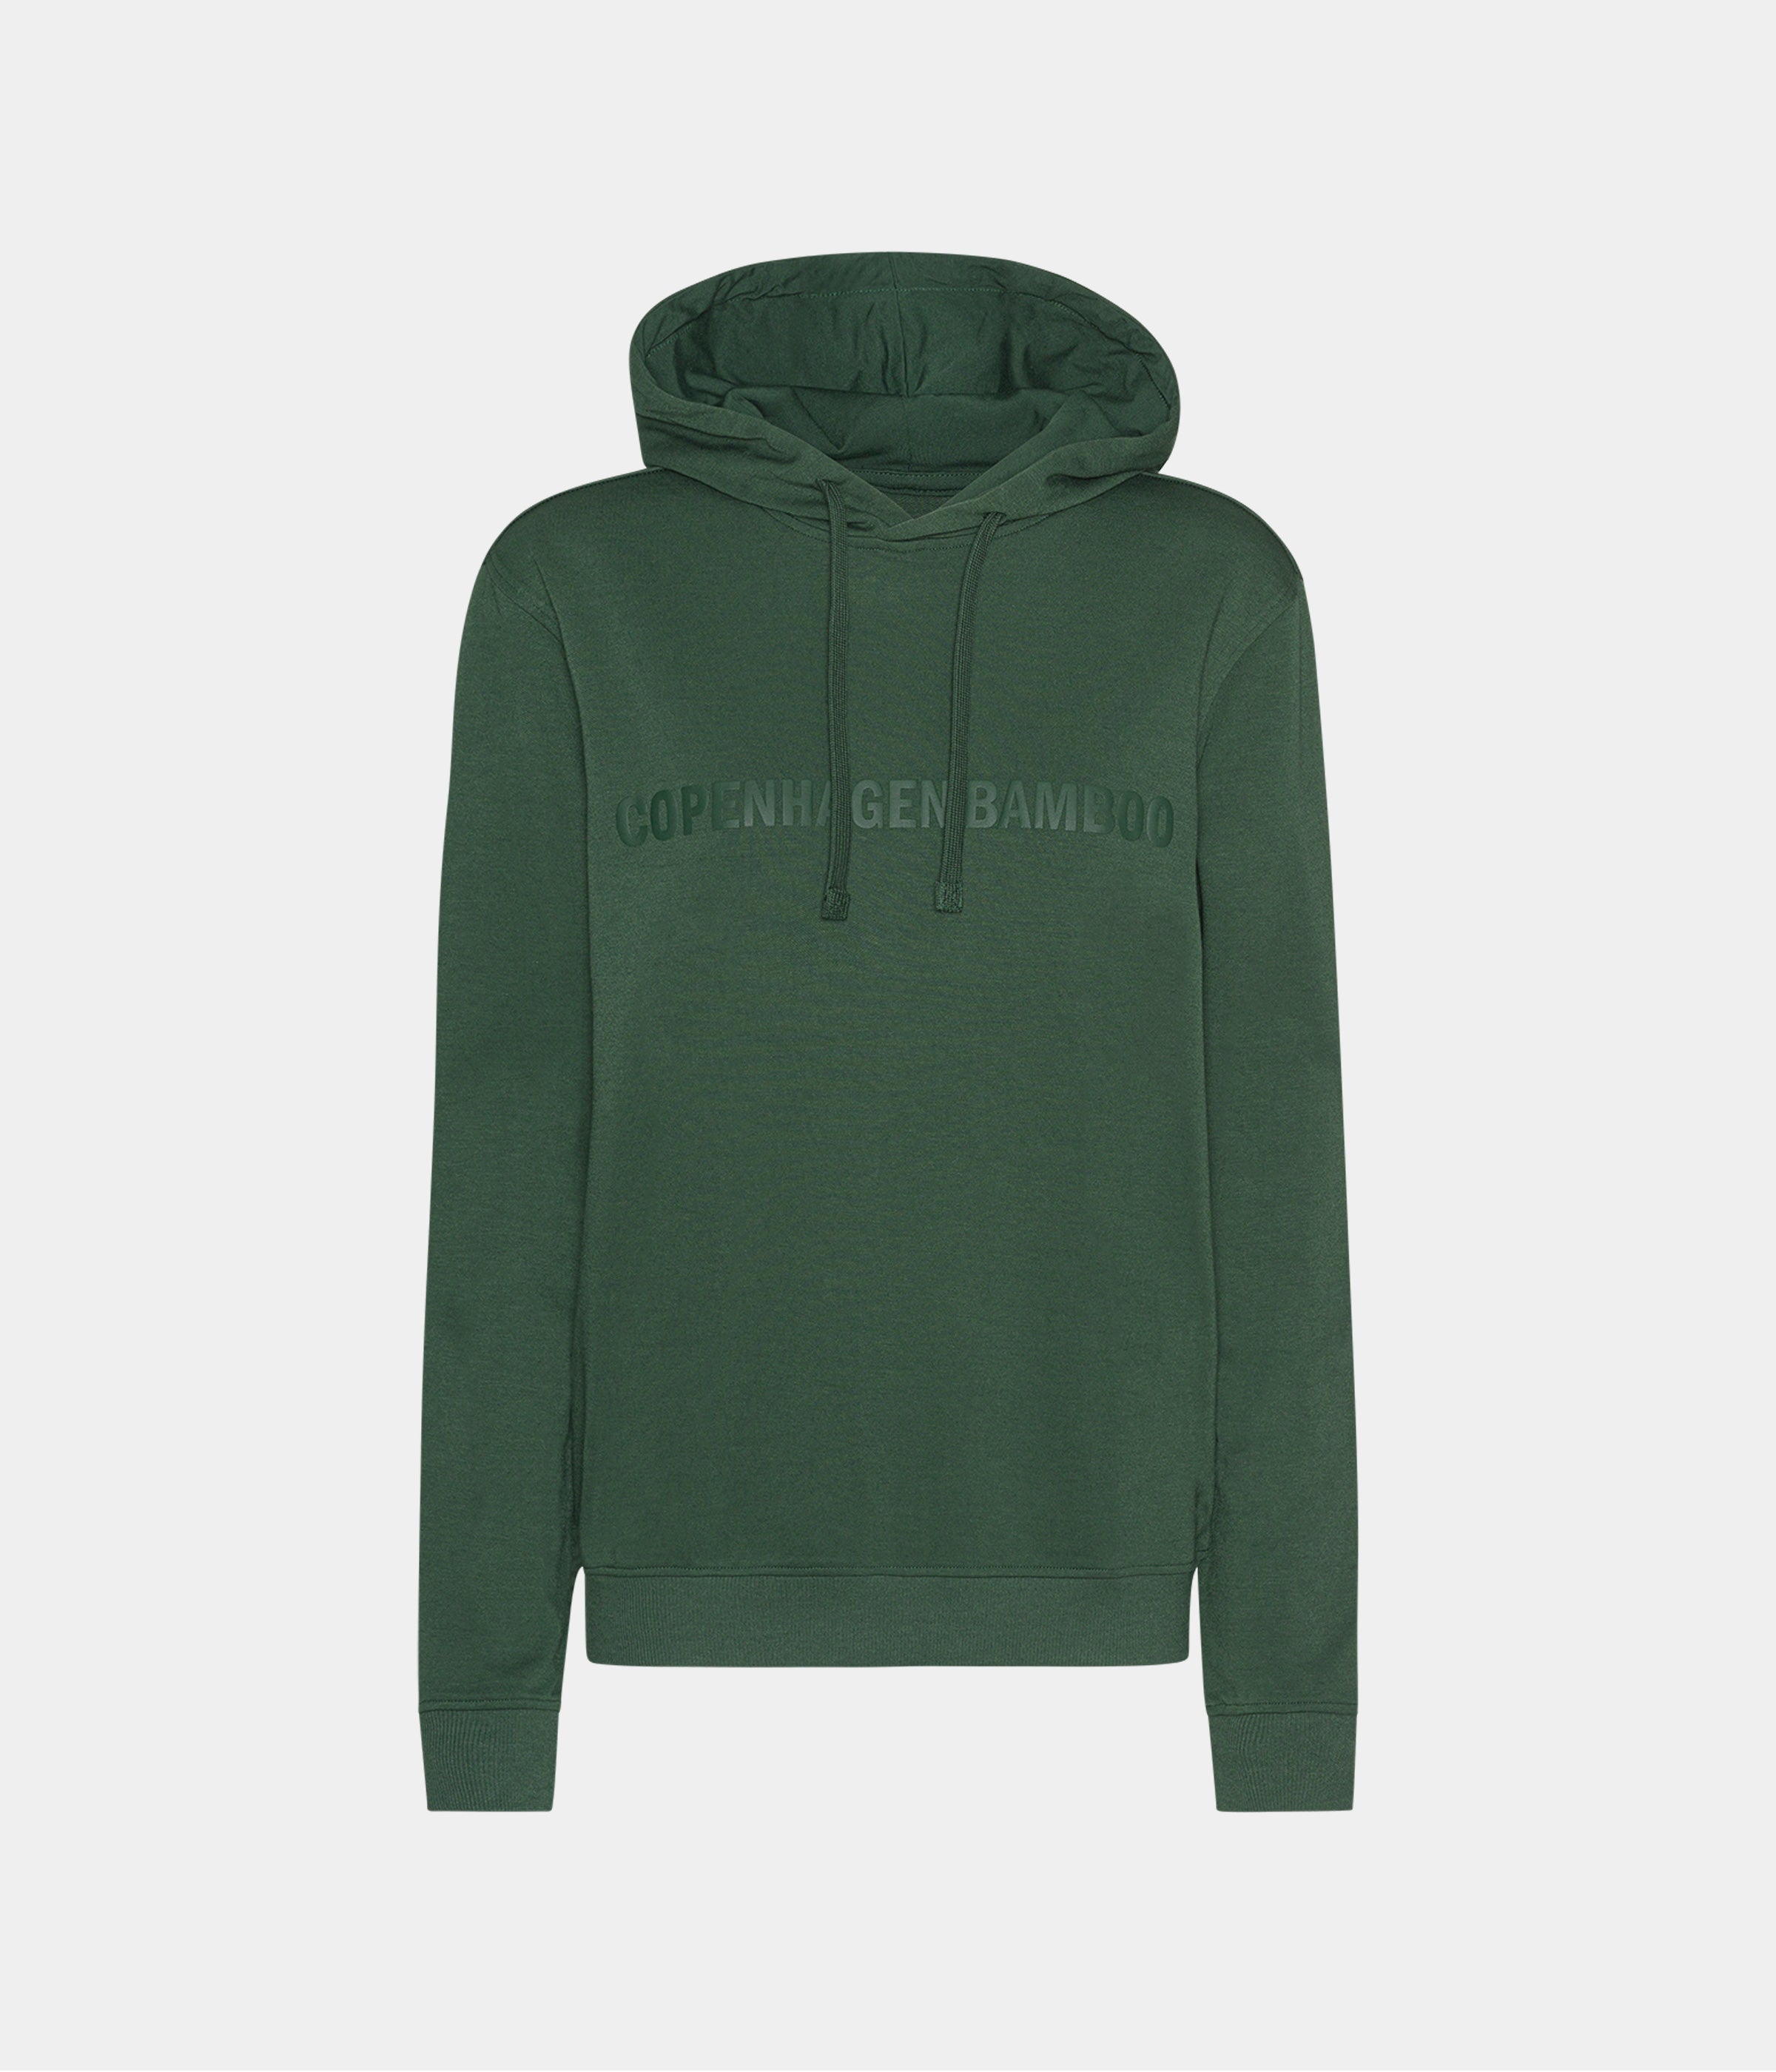 Se Grøn bambus hoodie til mænd med logo fra Copenhagen Bamboo, XS hos Copenhagen Bamboo